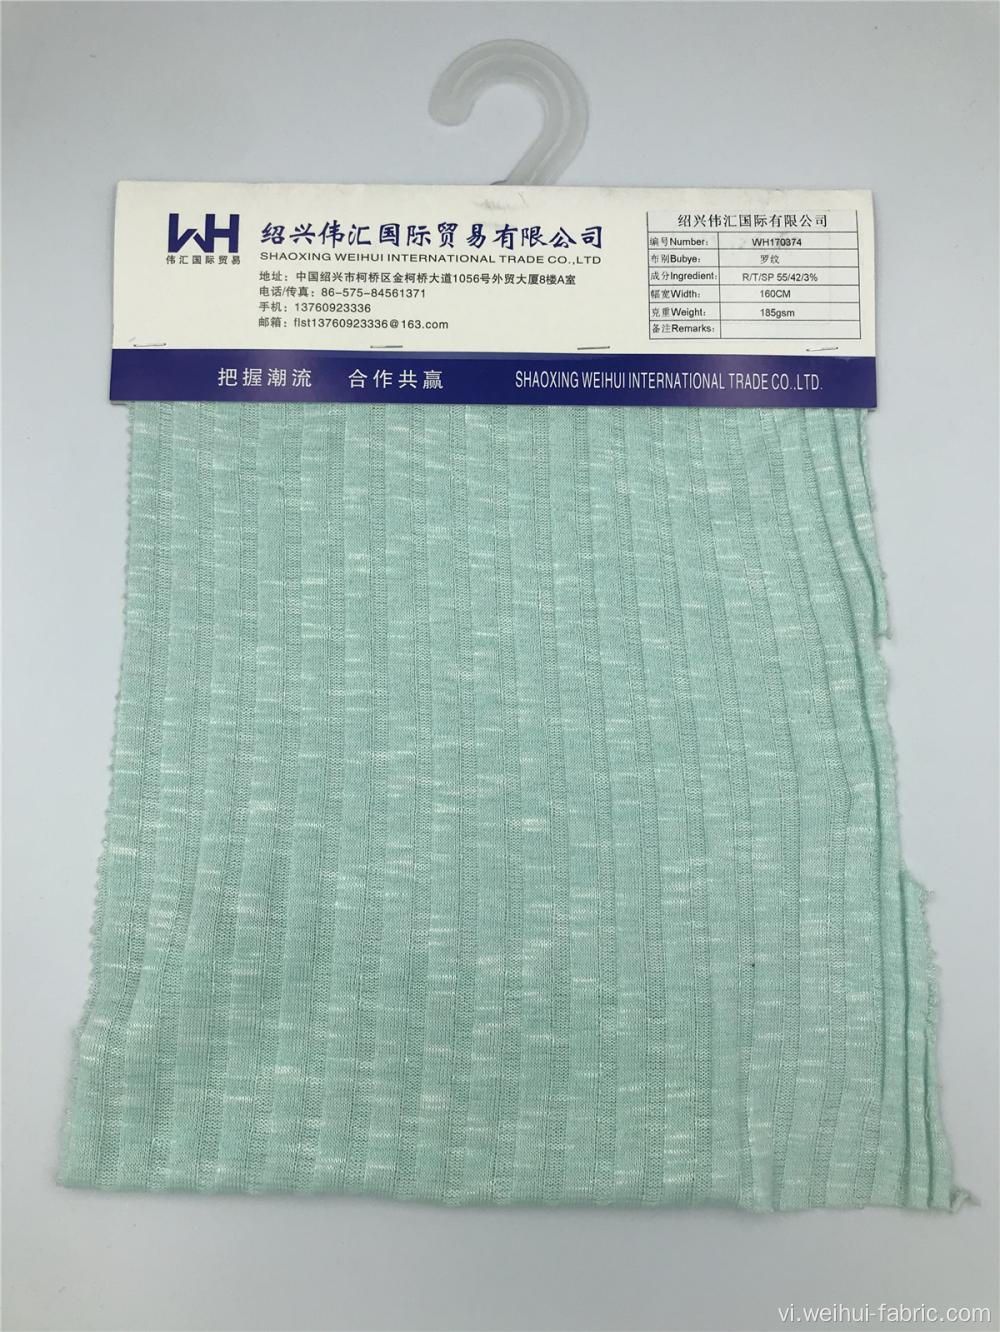 Vải dệt kim R / T / SP màu xanh lá cây nhạt chất lượng cao